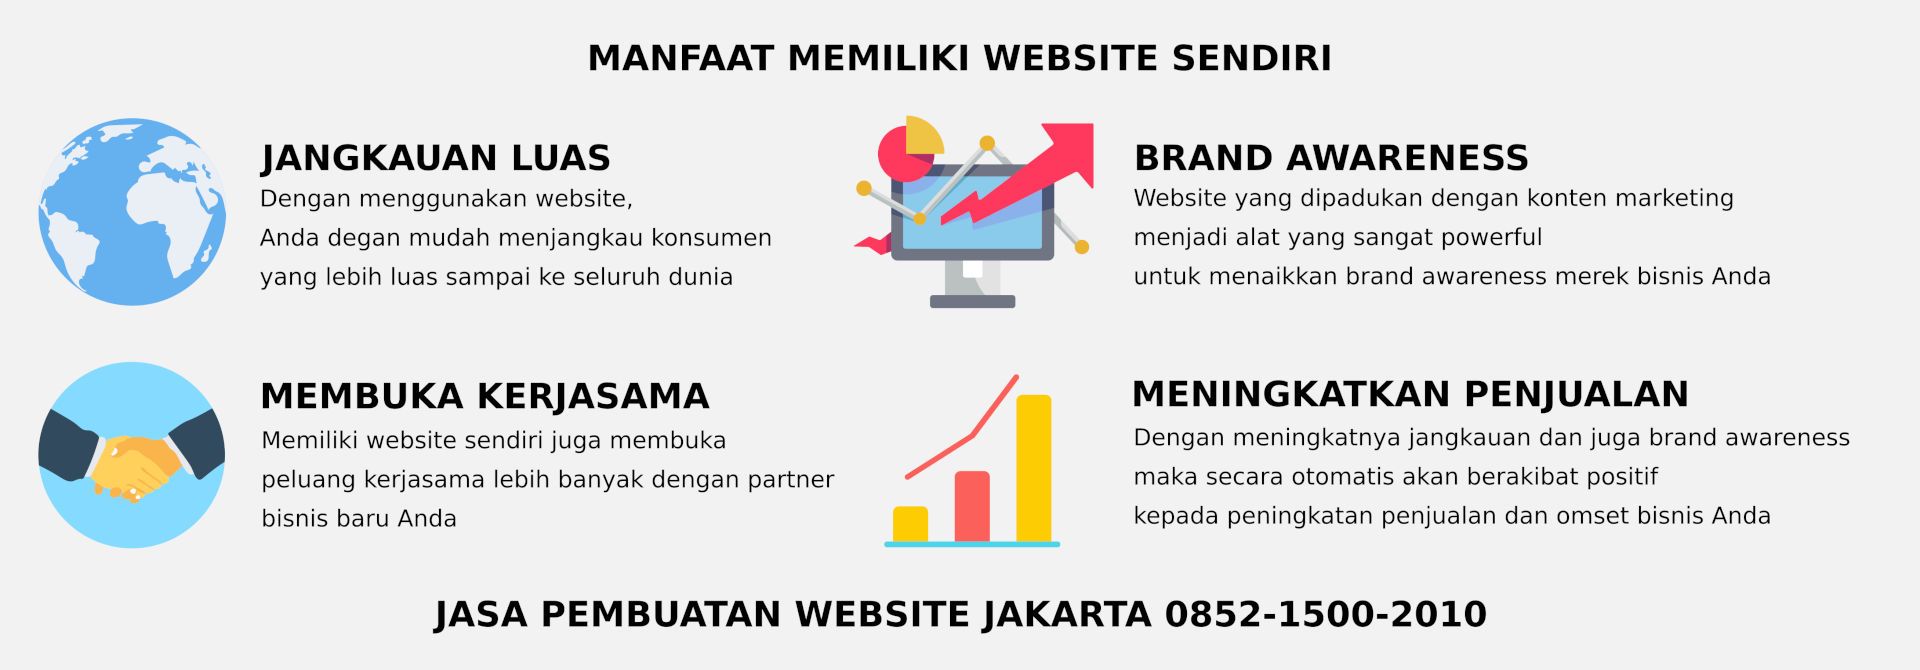 Manfaat memiliki website sendiri di Jakarta